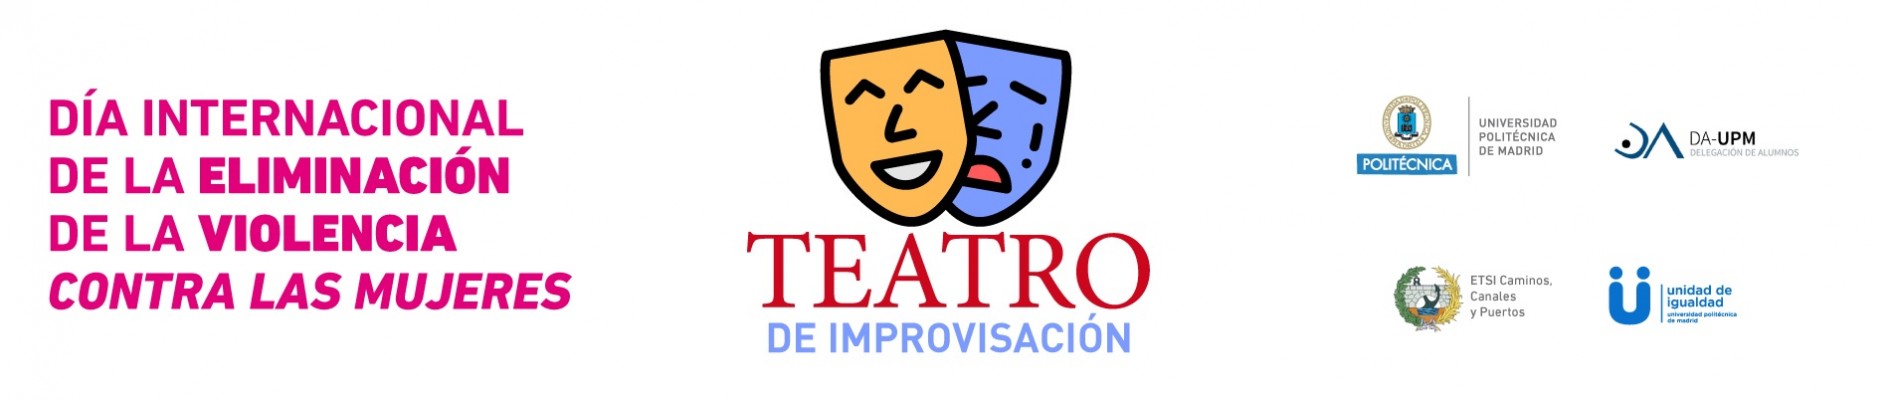 Banner 25N: Teatro de Improvisación